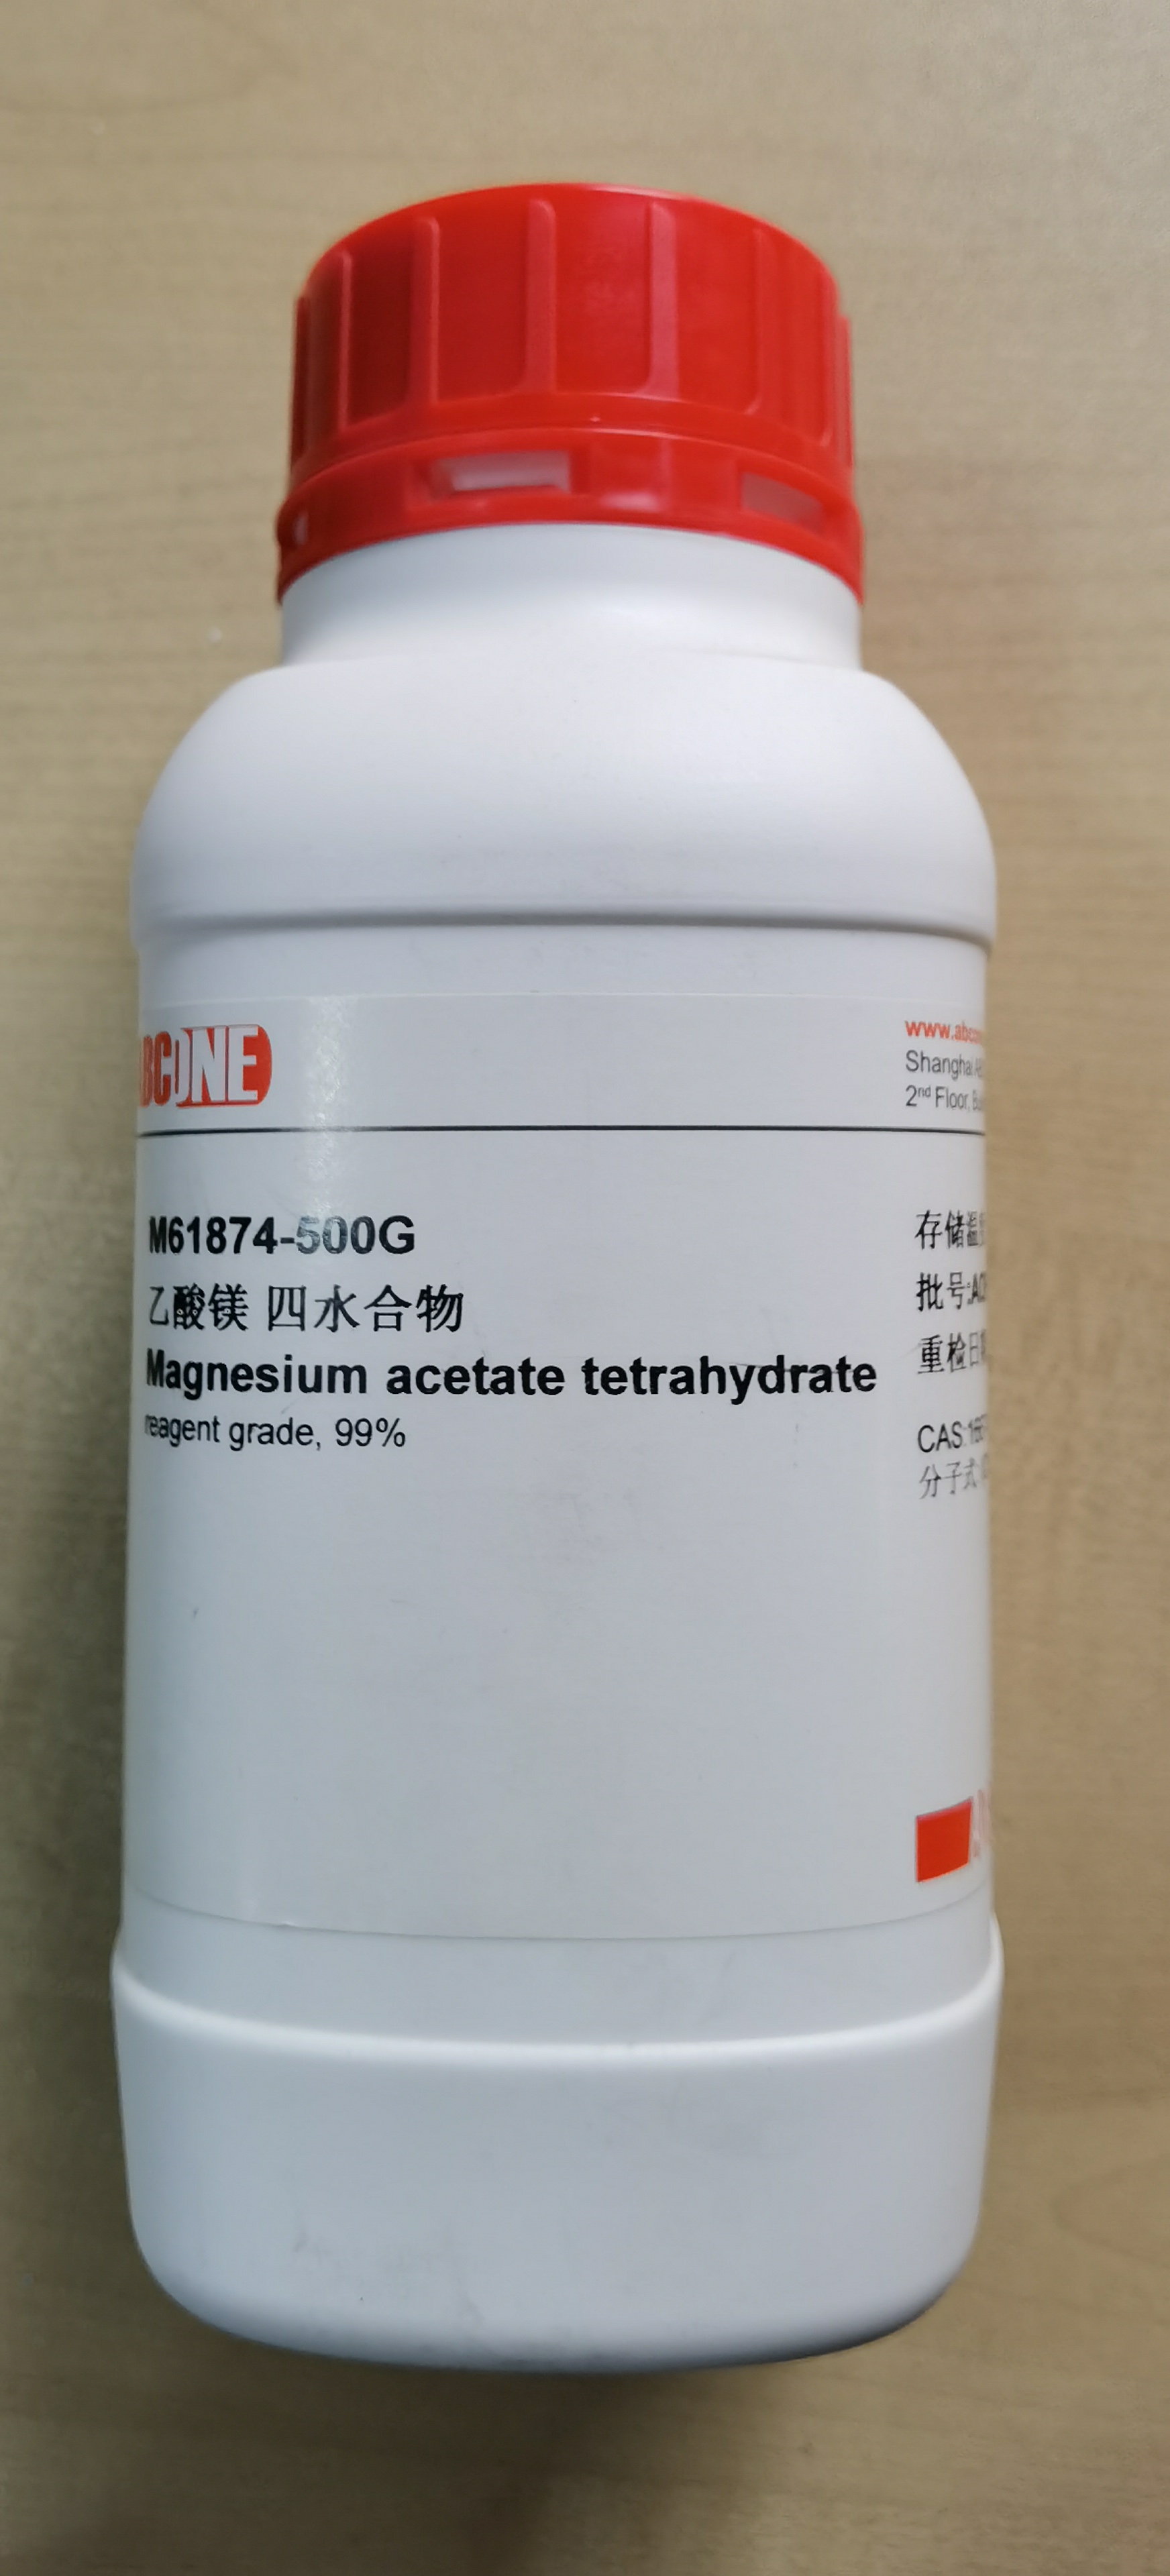 M61874， Magnesium acetate tetrahydrate ， 乙酸镁 四水合物